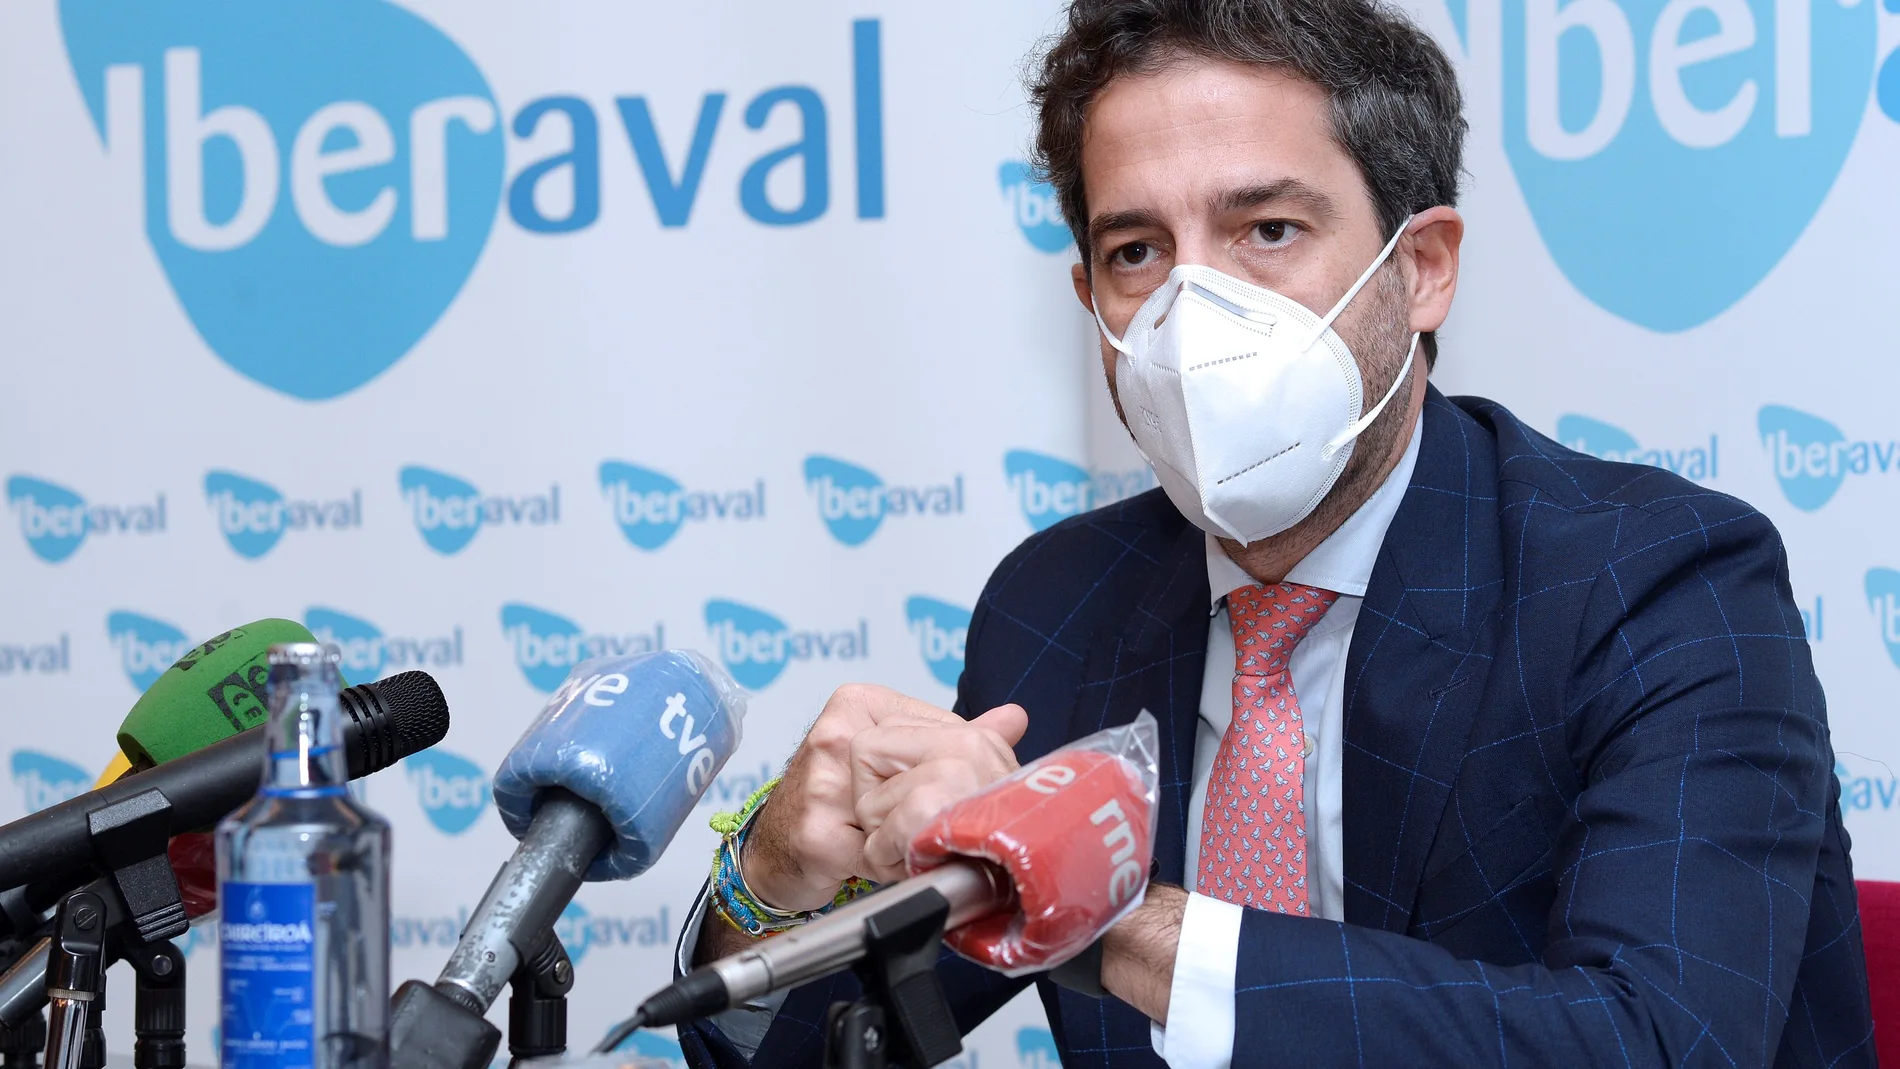 El presidente de Iberaval, César Pontvianne, informa esta mañana en rueda de prensa de nuevas líneas de apoyo a pymes y autónomos de Castilla y León